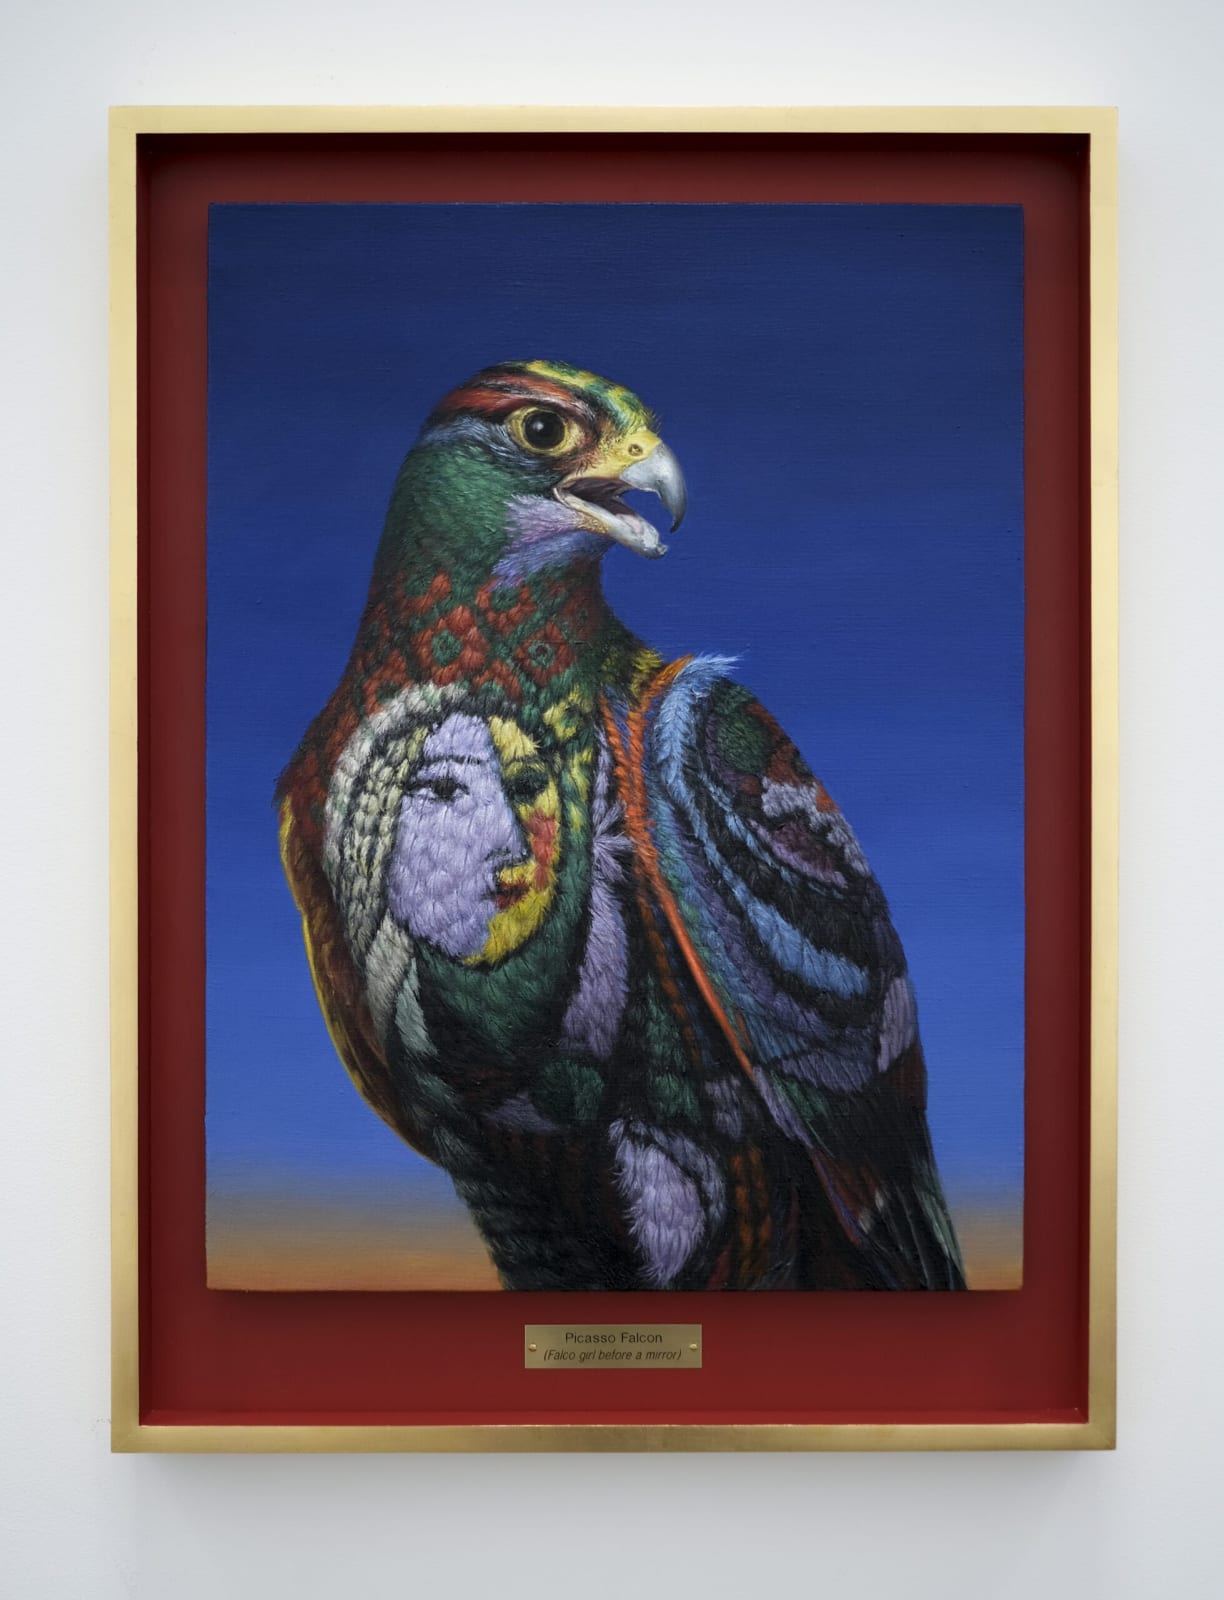 Clive Smith, Picasso Falcon (Falco girl before a mirror), 2021